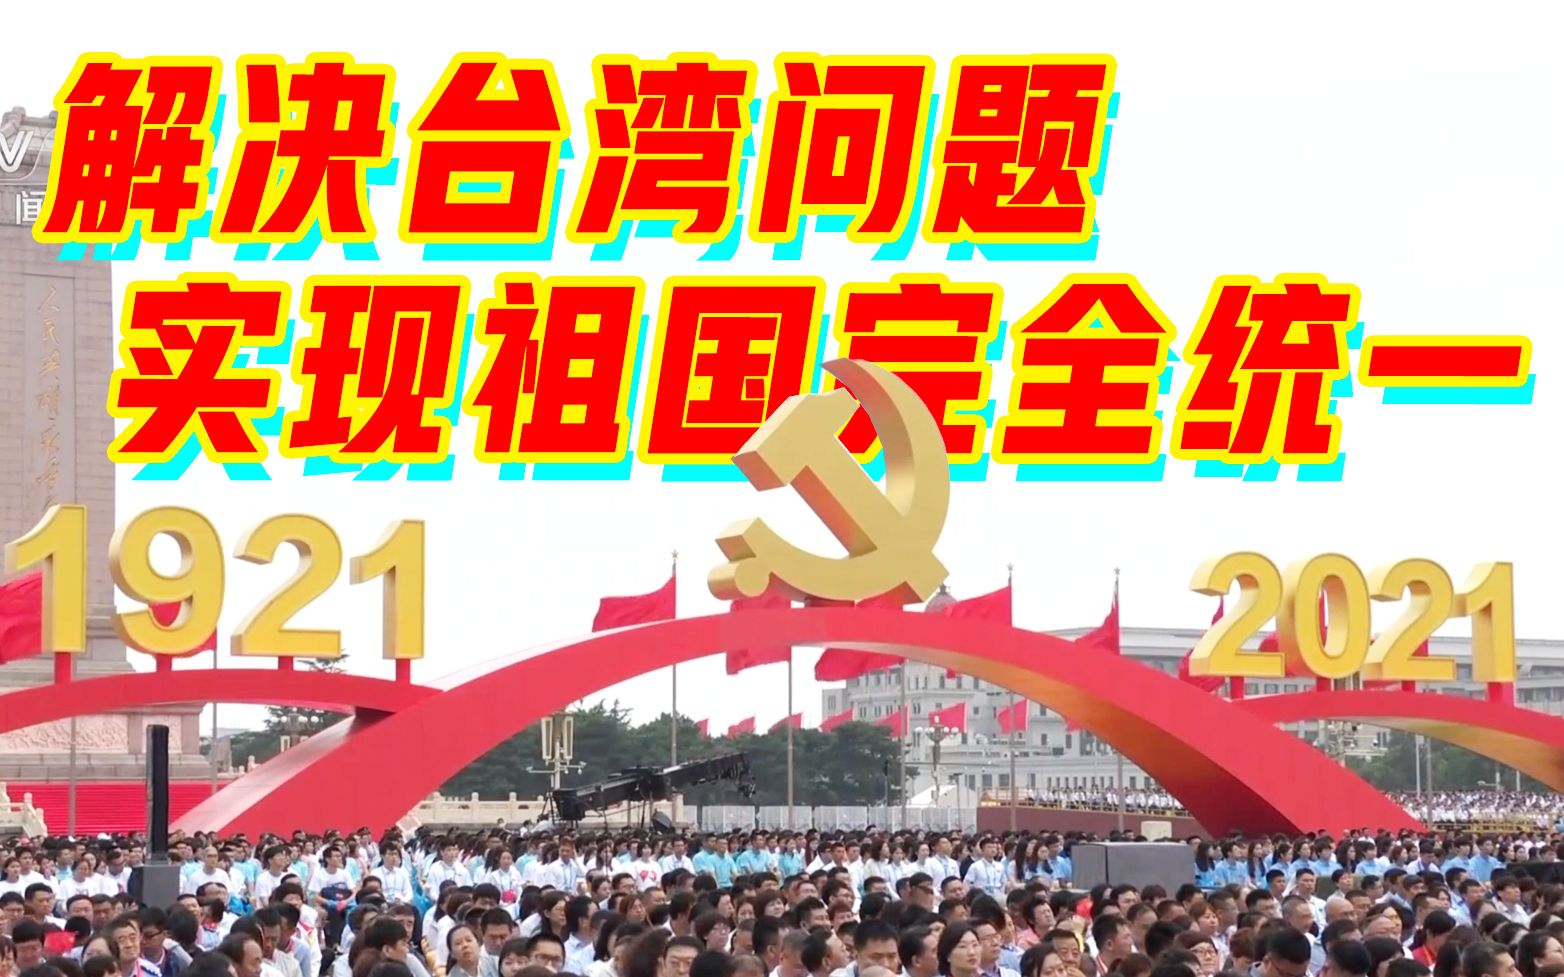 解决台湾问题、实现祖国完全统一，是中国共产党矢志不渝的历史任务